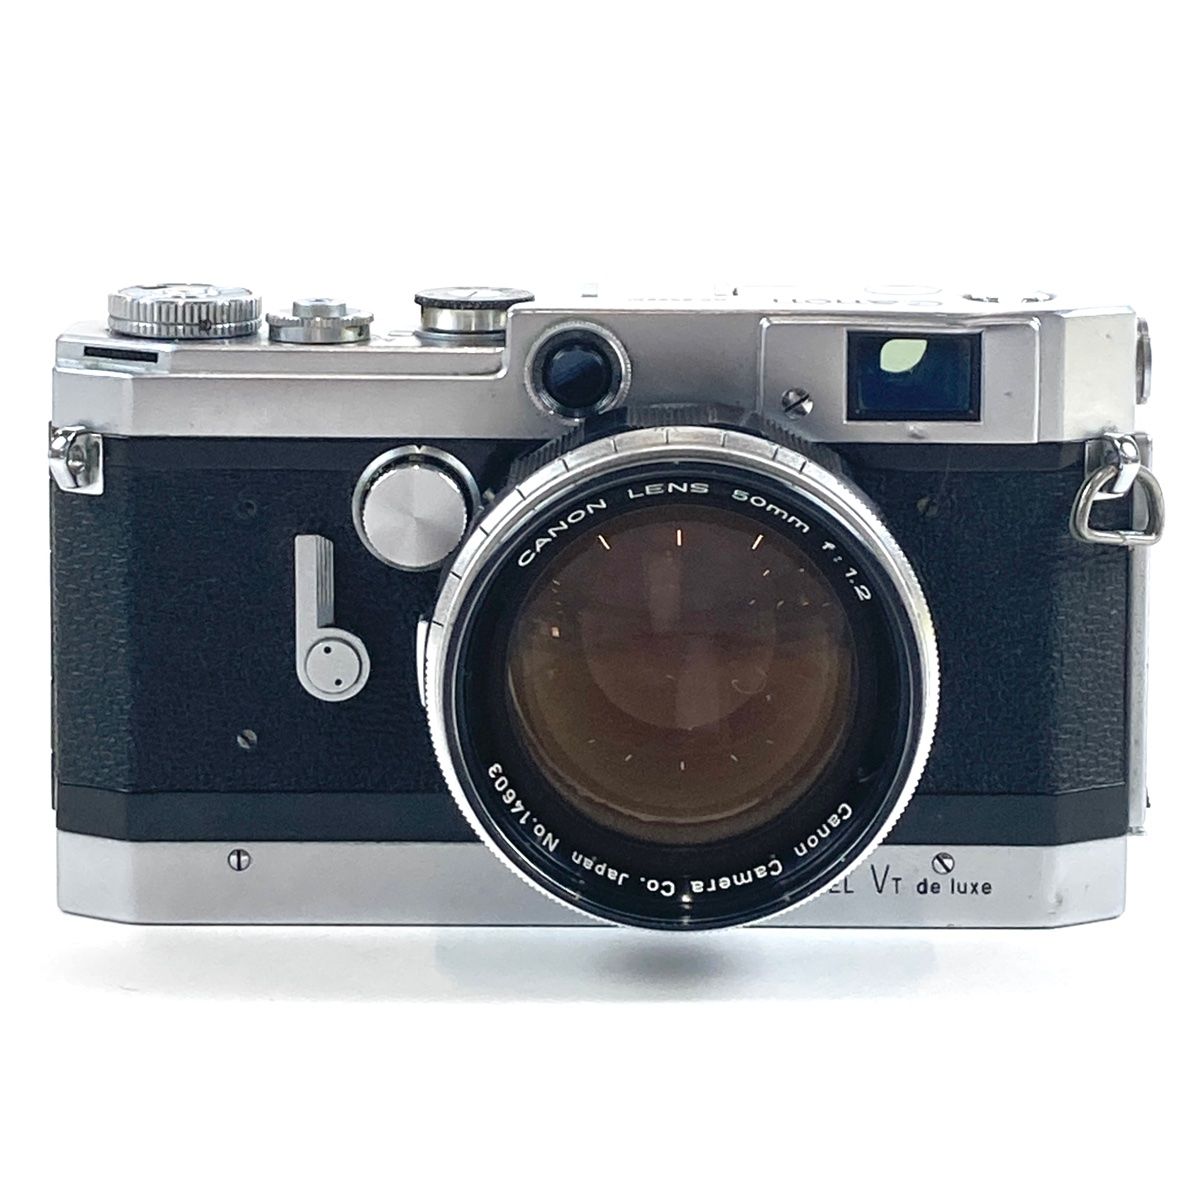 キヤノン Canon MODEL VT de luxe + 50mm F1.2 Lマウント L39 フィルム レンジファインダーカメラ 【中古】 -  メルカリ